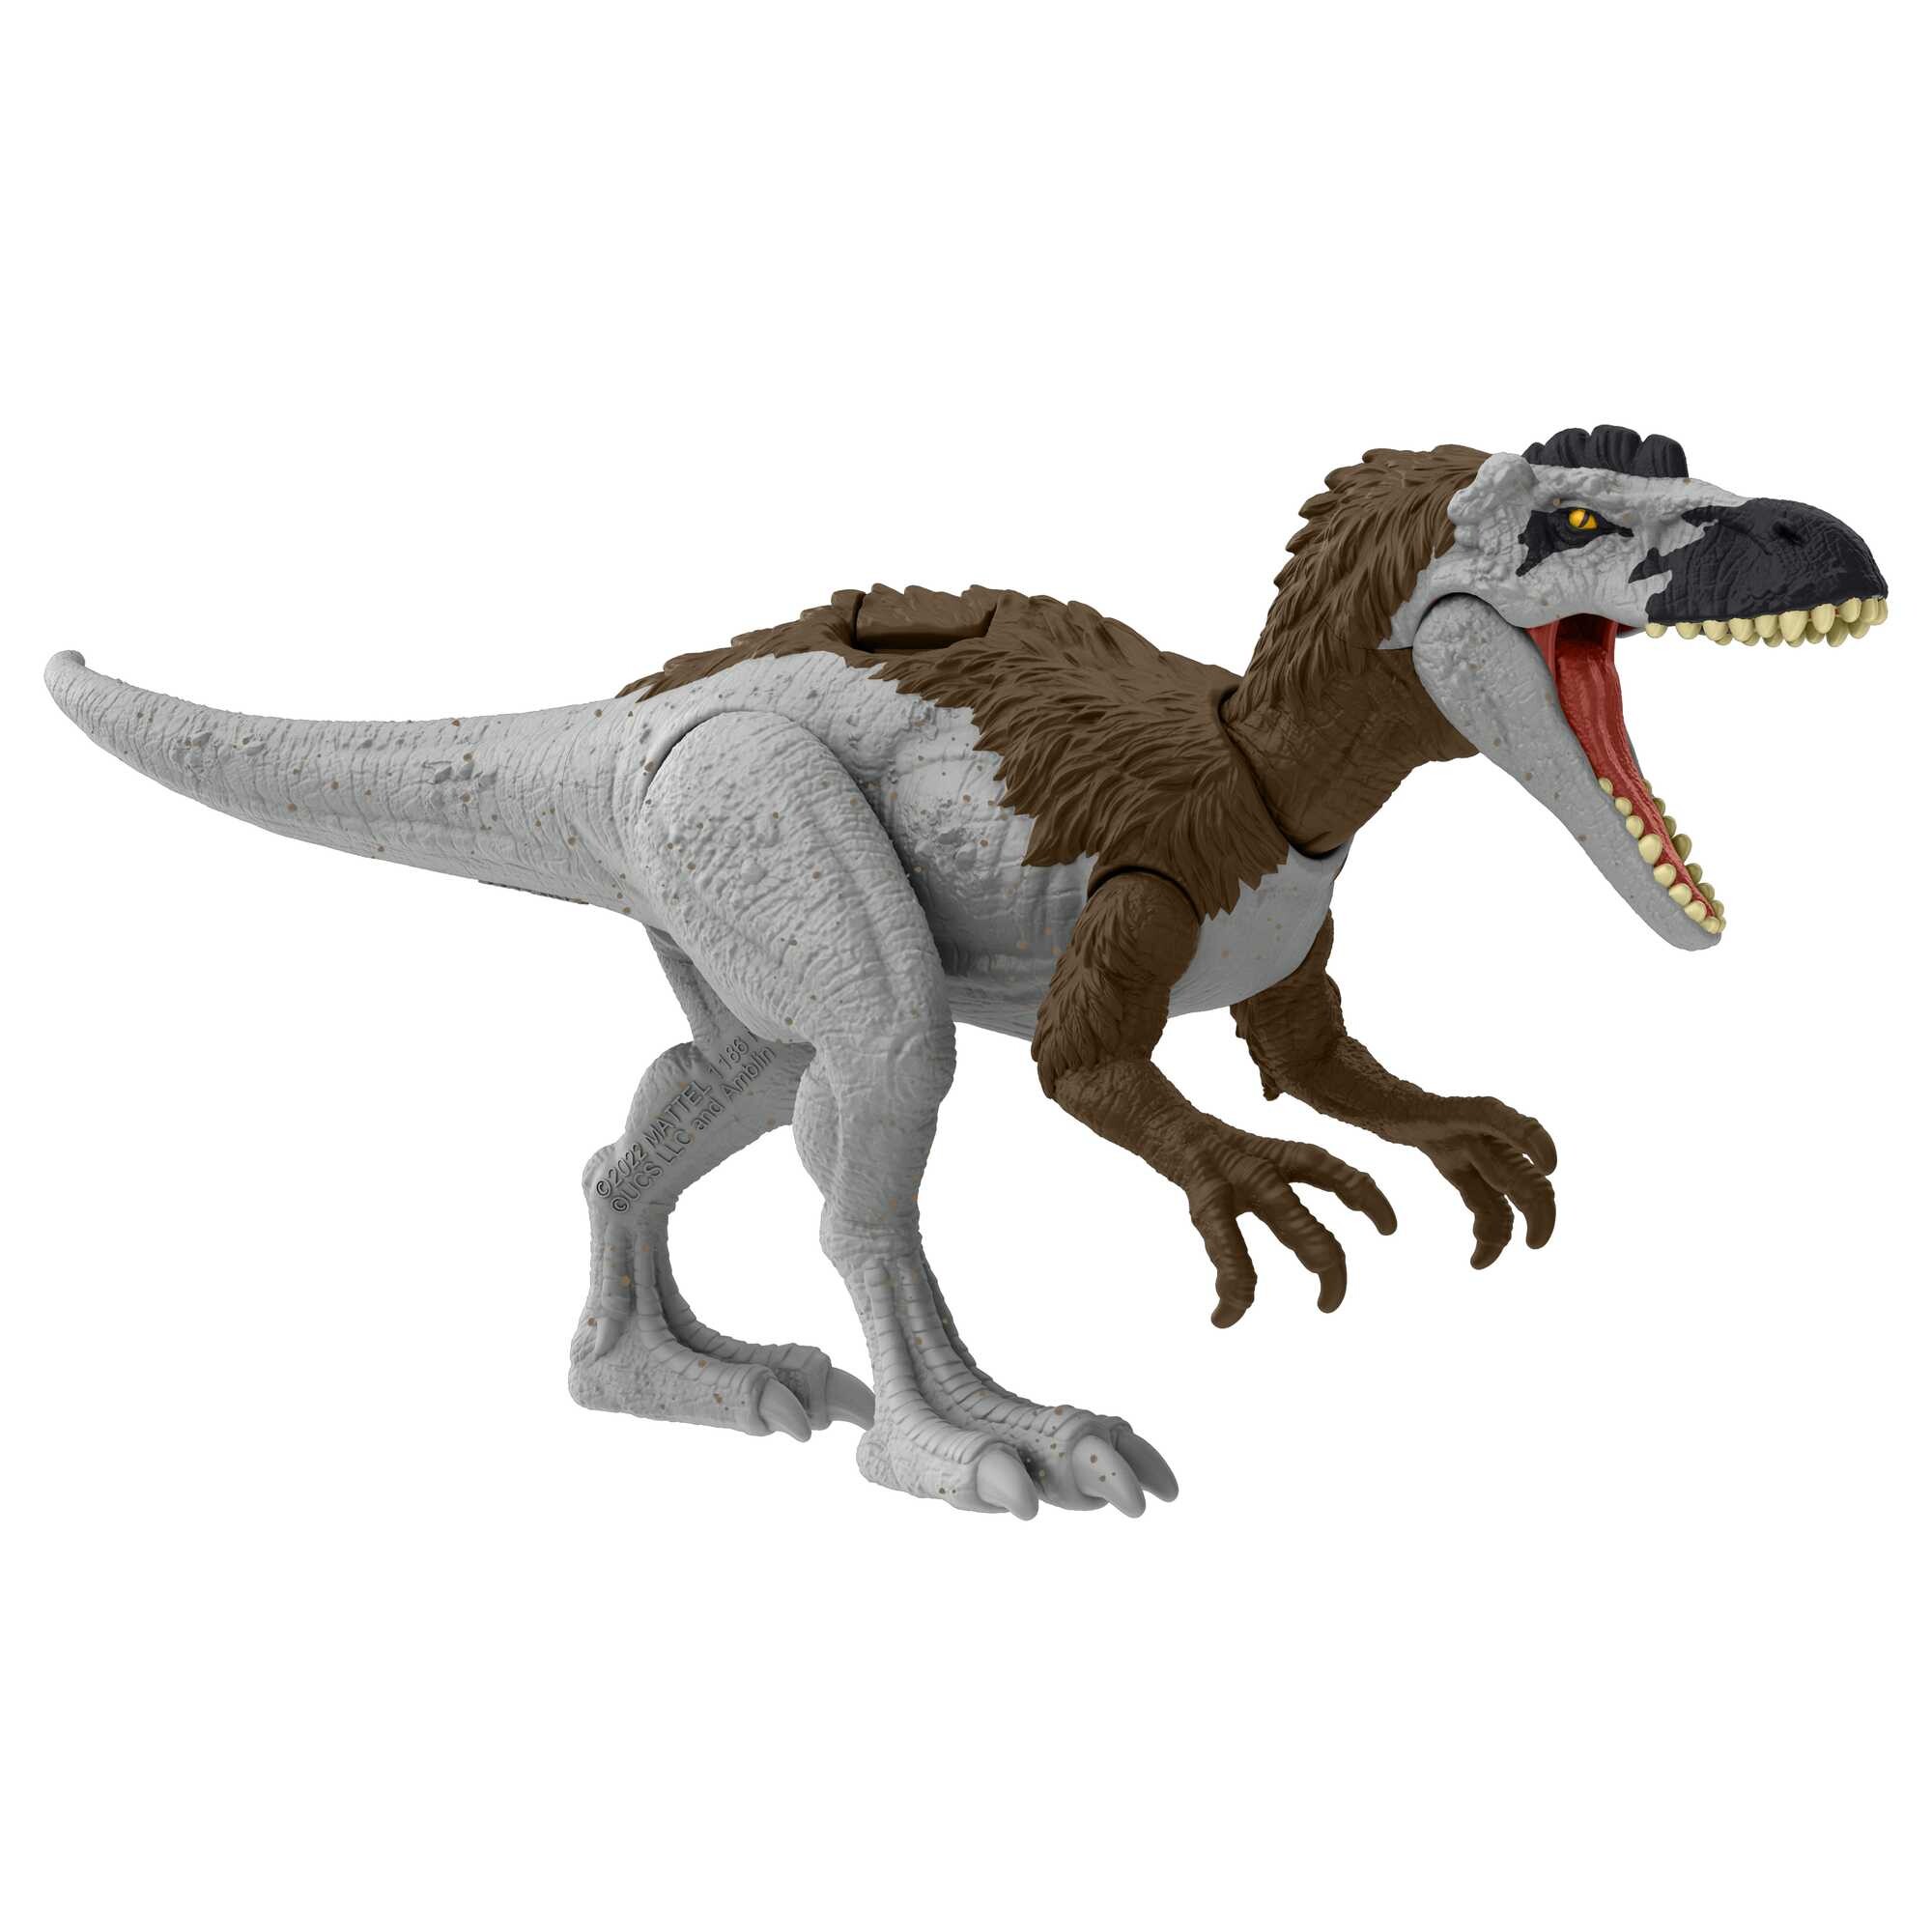 Jurassic world pericolo giurassico - xuanhanosauro , dinosauro snodato con design autentico, specie di medie dimensioni lungo 18 cm e alto 7+ cm - Barbie